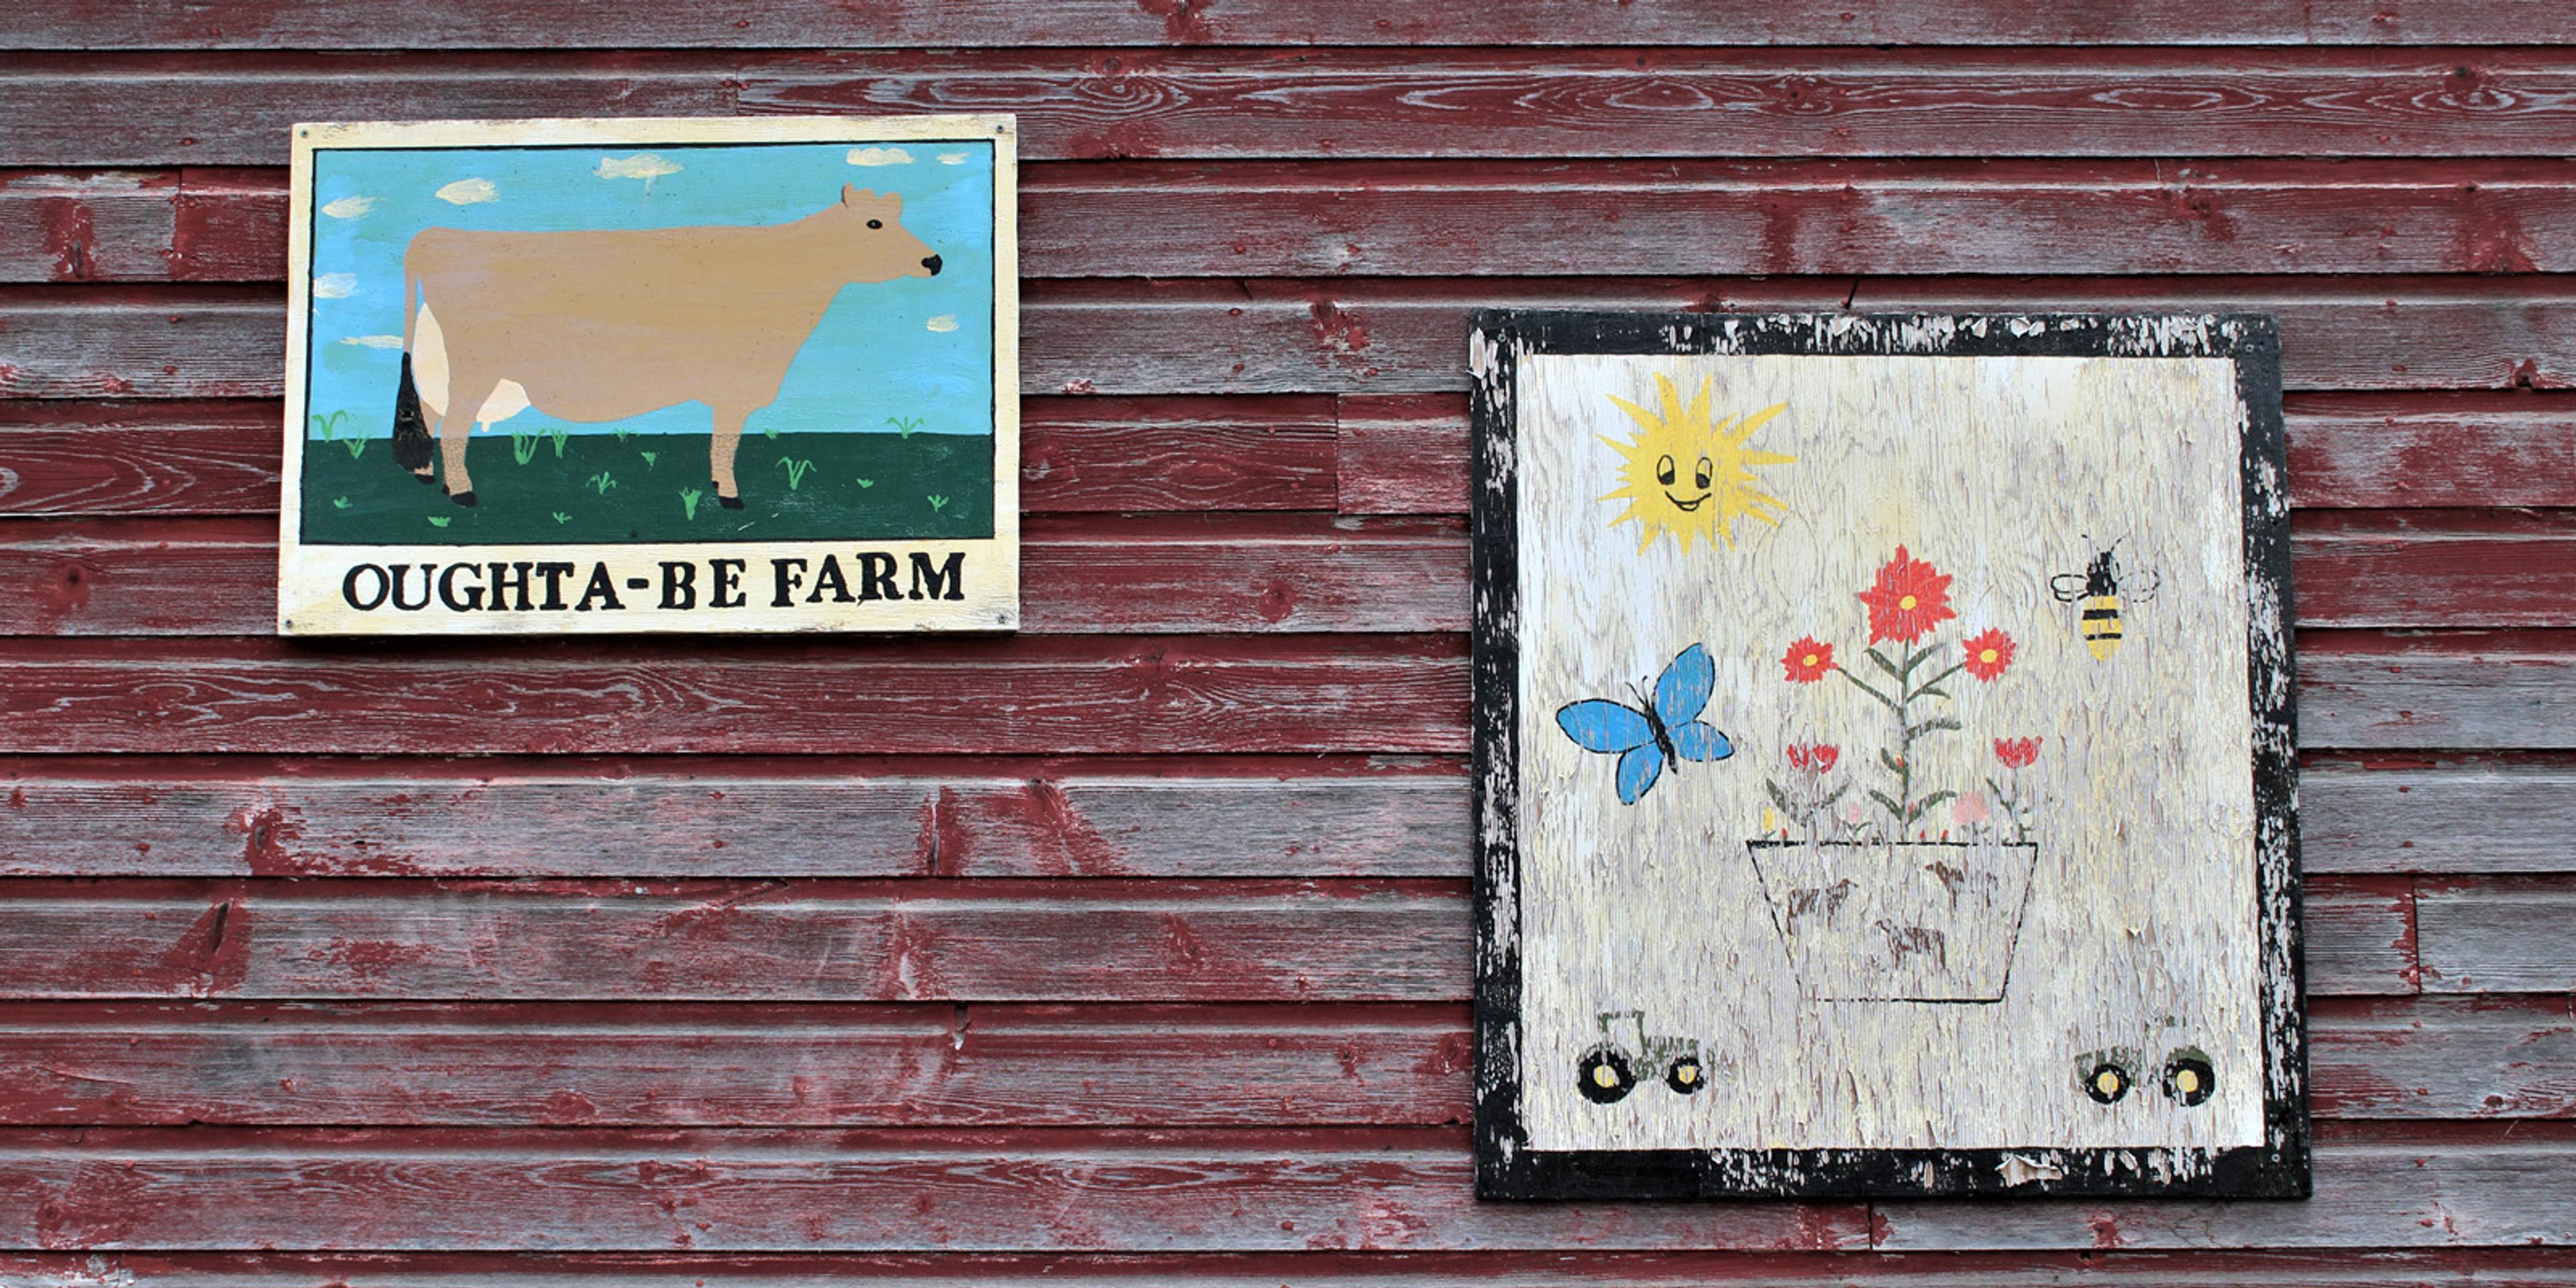 The Oughta-Be Farm sign on a barn.